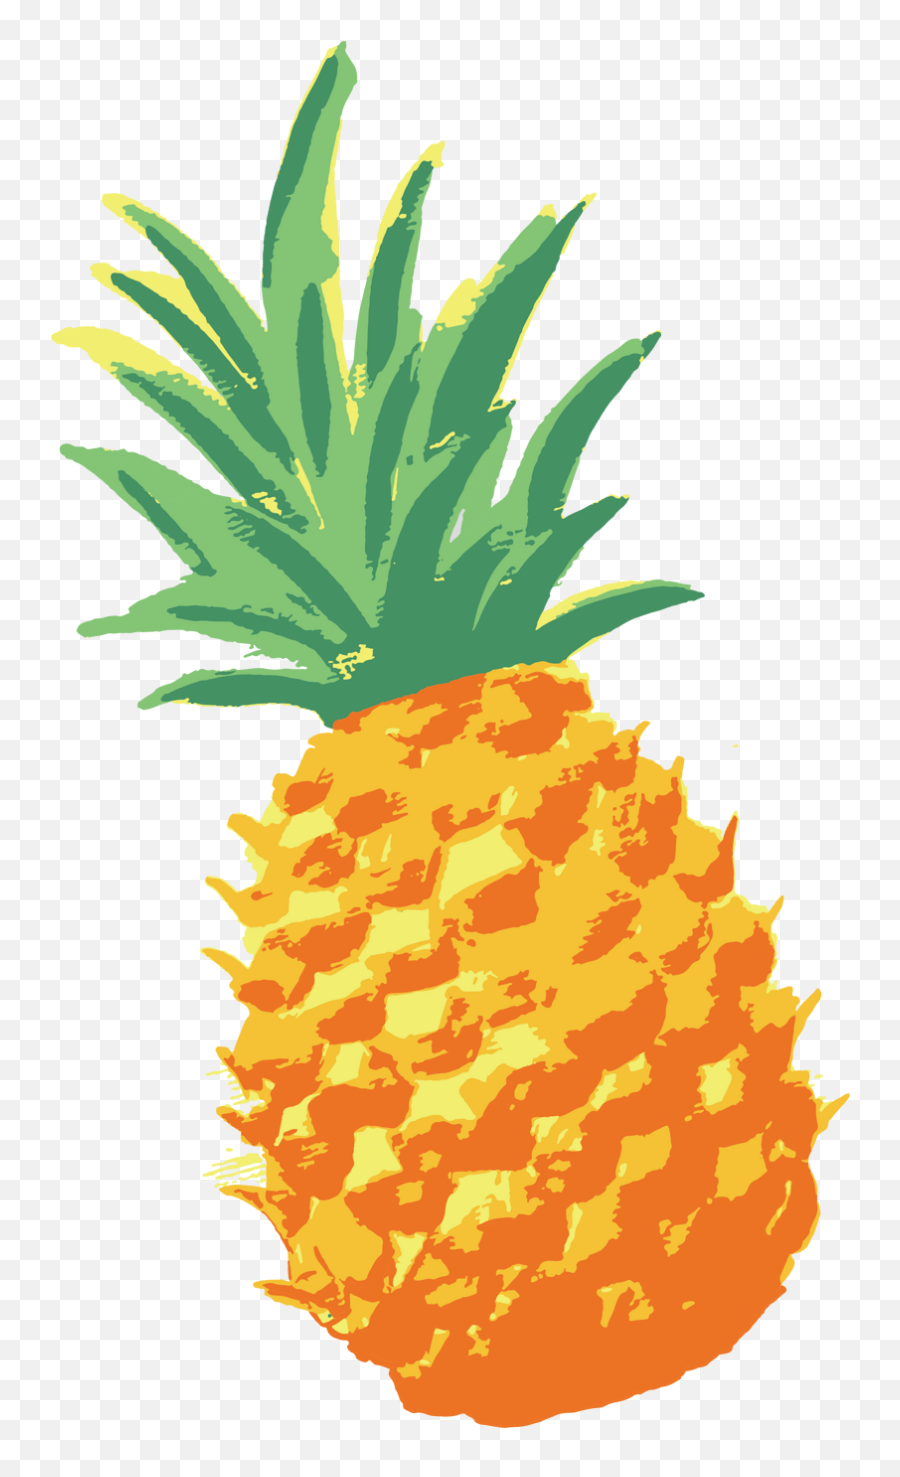 Download Network Ananas Pineapple - Pineapple Watercolor Png Emoji,Pen Pineapple Apple Pen Emoji Movie